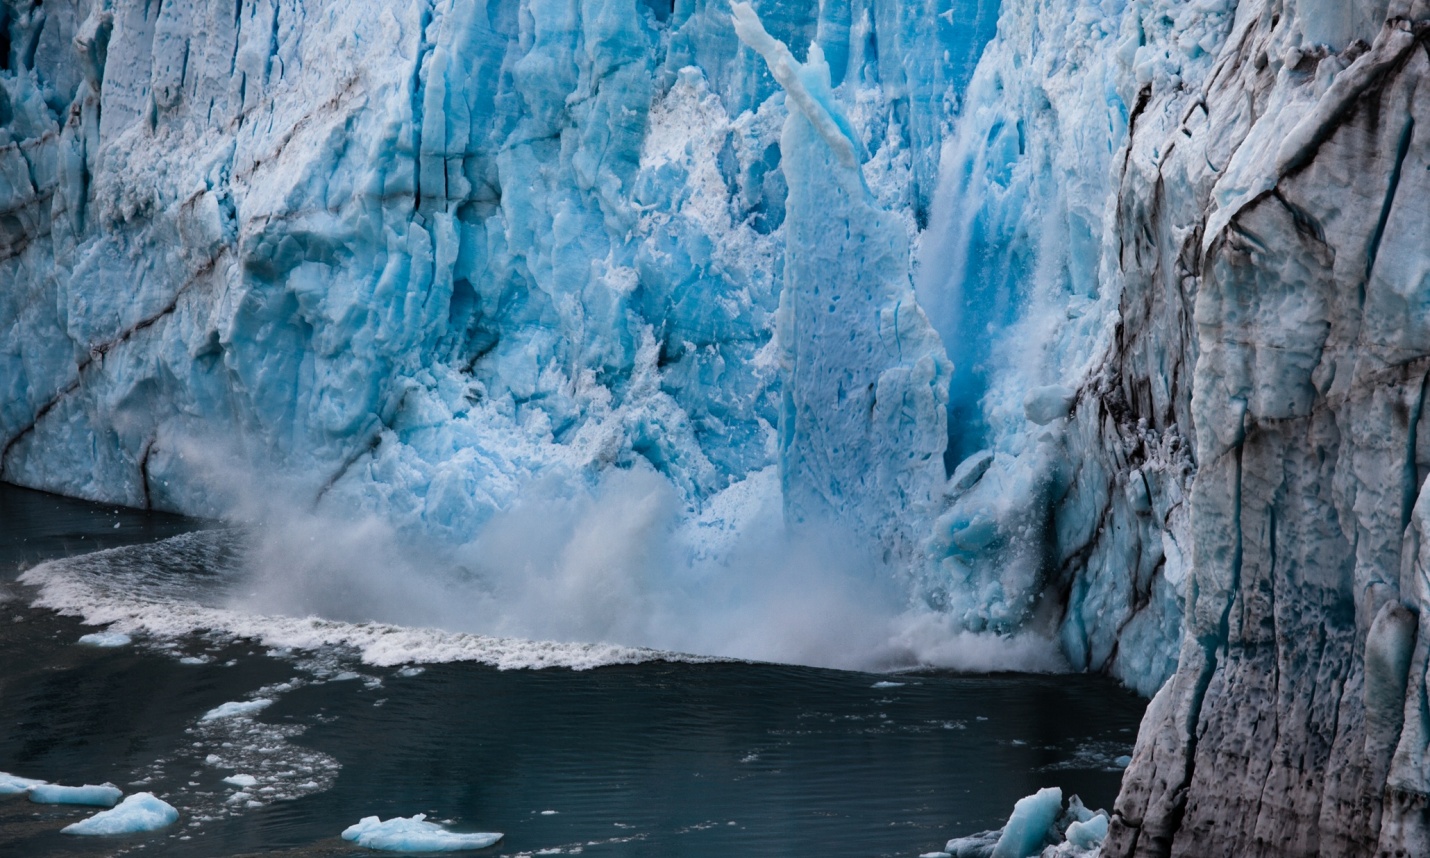 A chunk of ice breaks off from the Perito Moreno glacier in Argentina